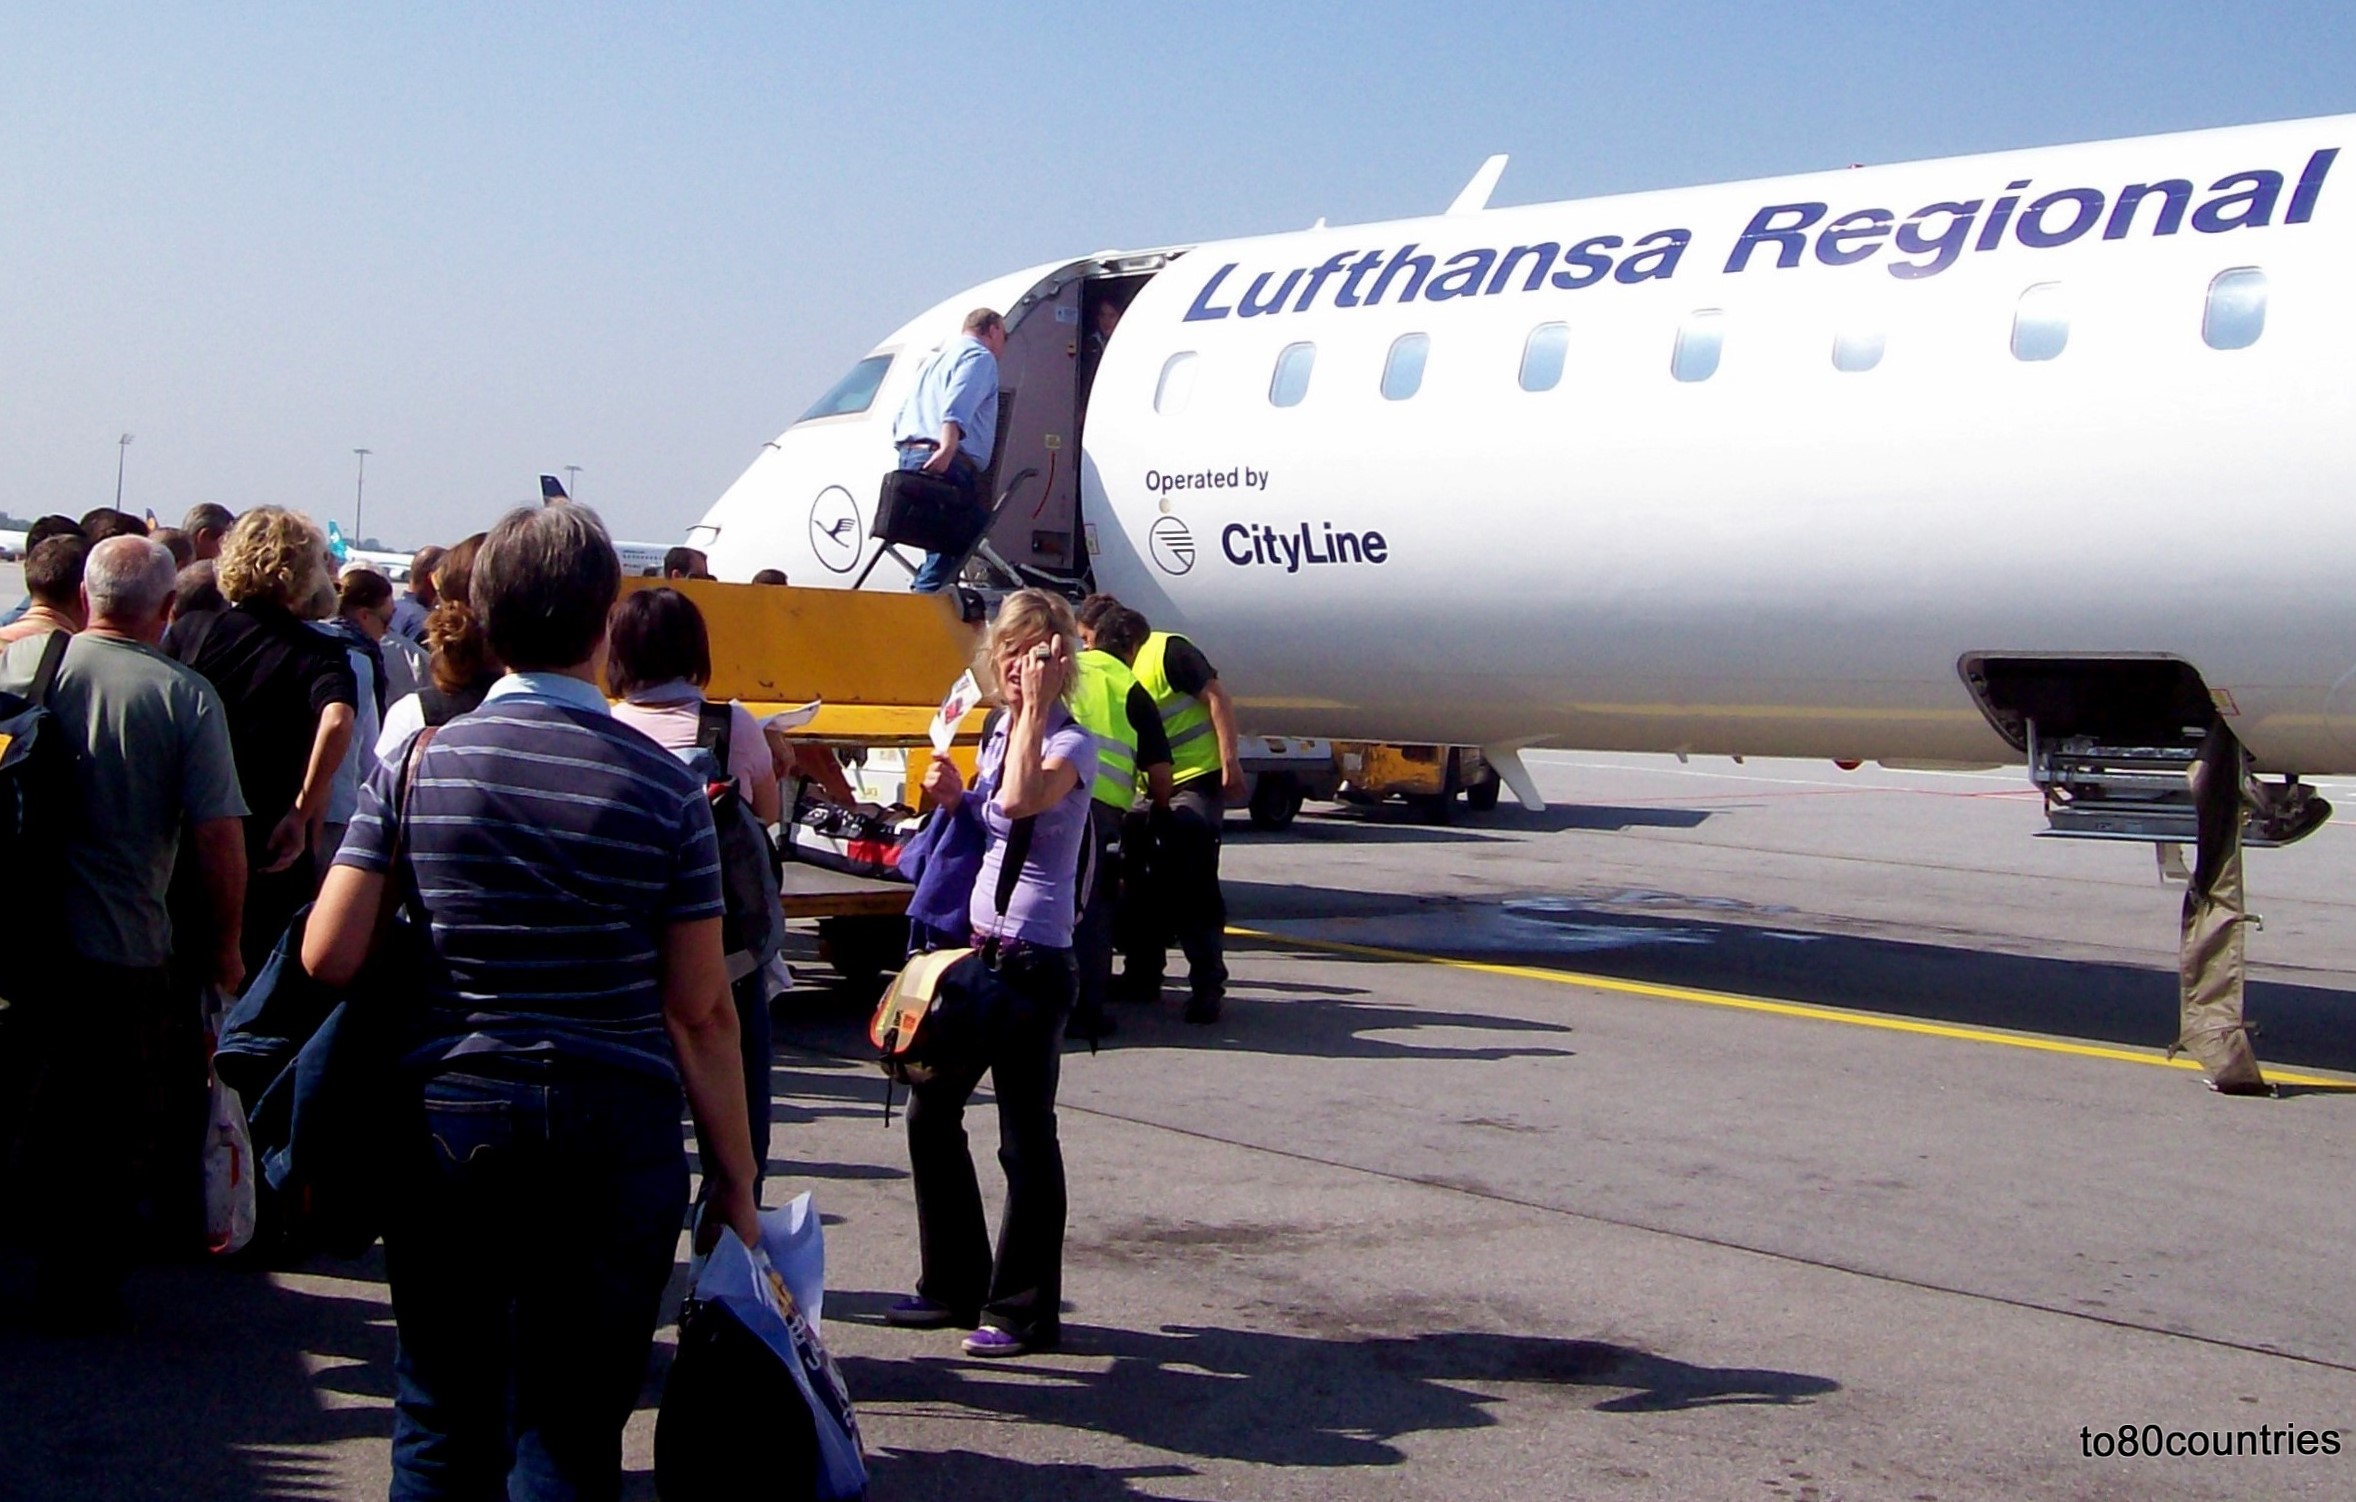 Lufthansa Regional Canadair Jet